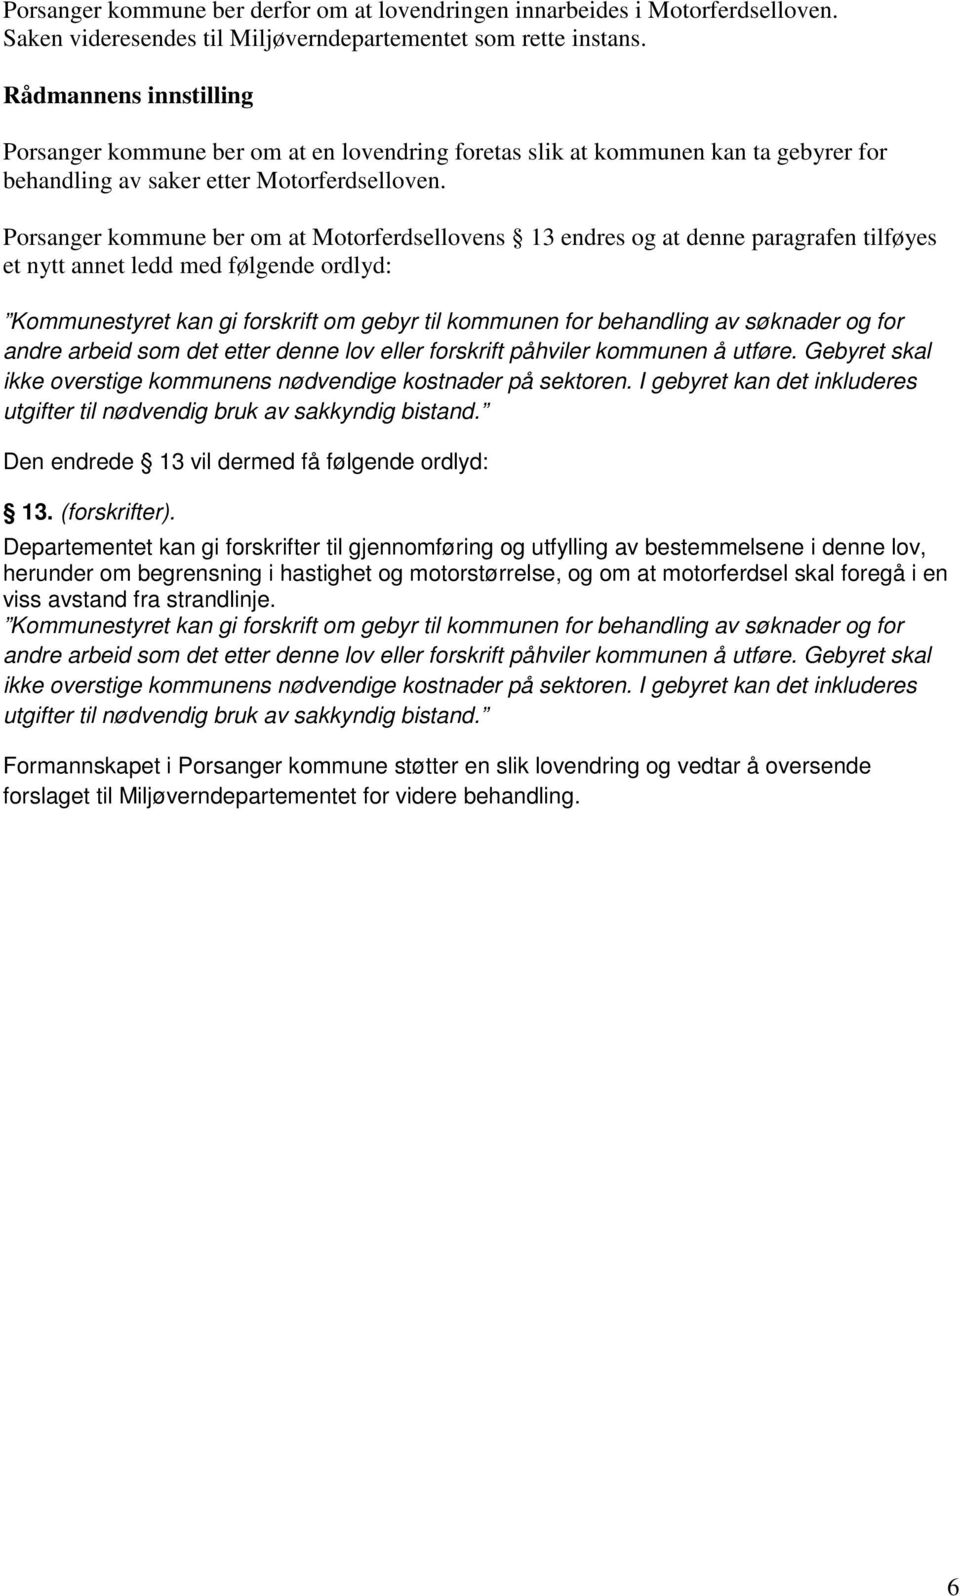 Porsanger kommune ber om at Motorferdsellovens 13 endres og at denne paragrafen tilføyes et nytt annet ledd med følgende ordlyd: Kommunestyret kan gi forskrift om gebyr til kommunen for behandling av